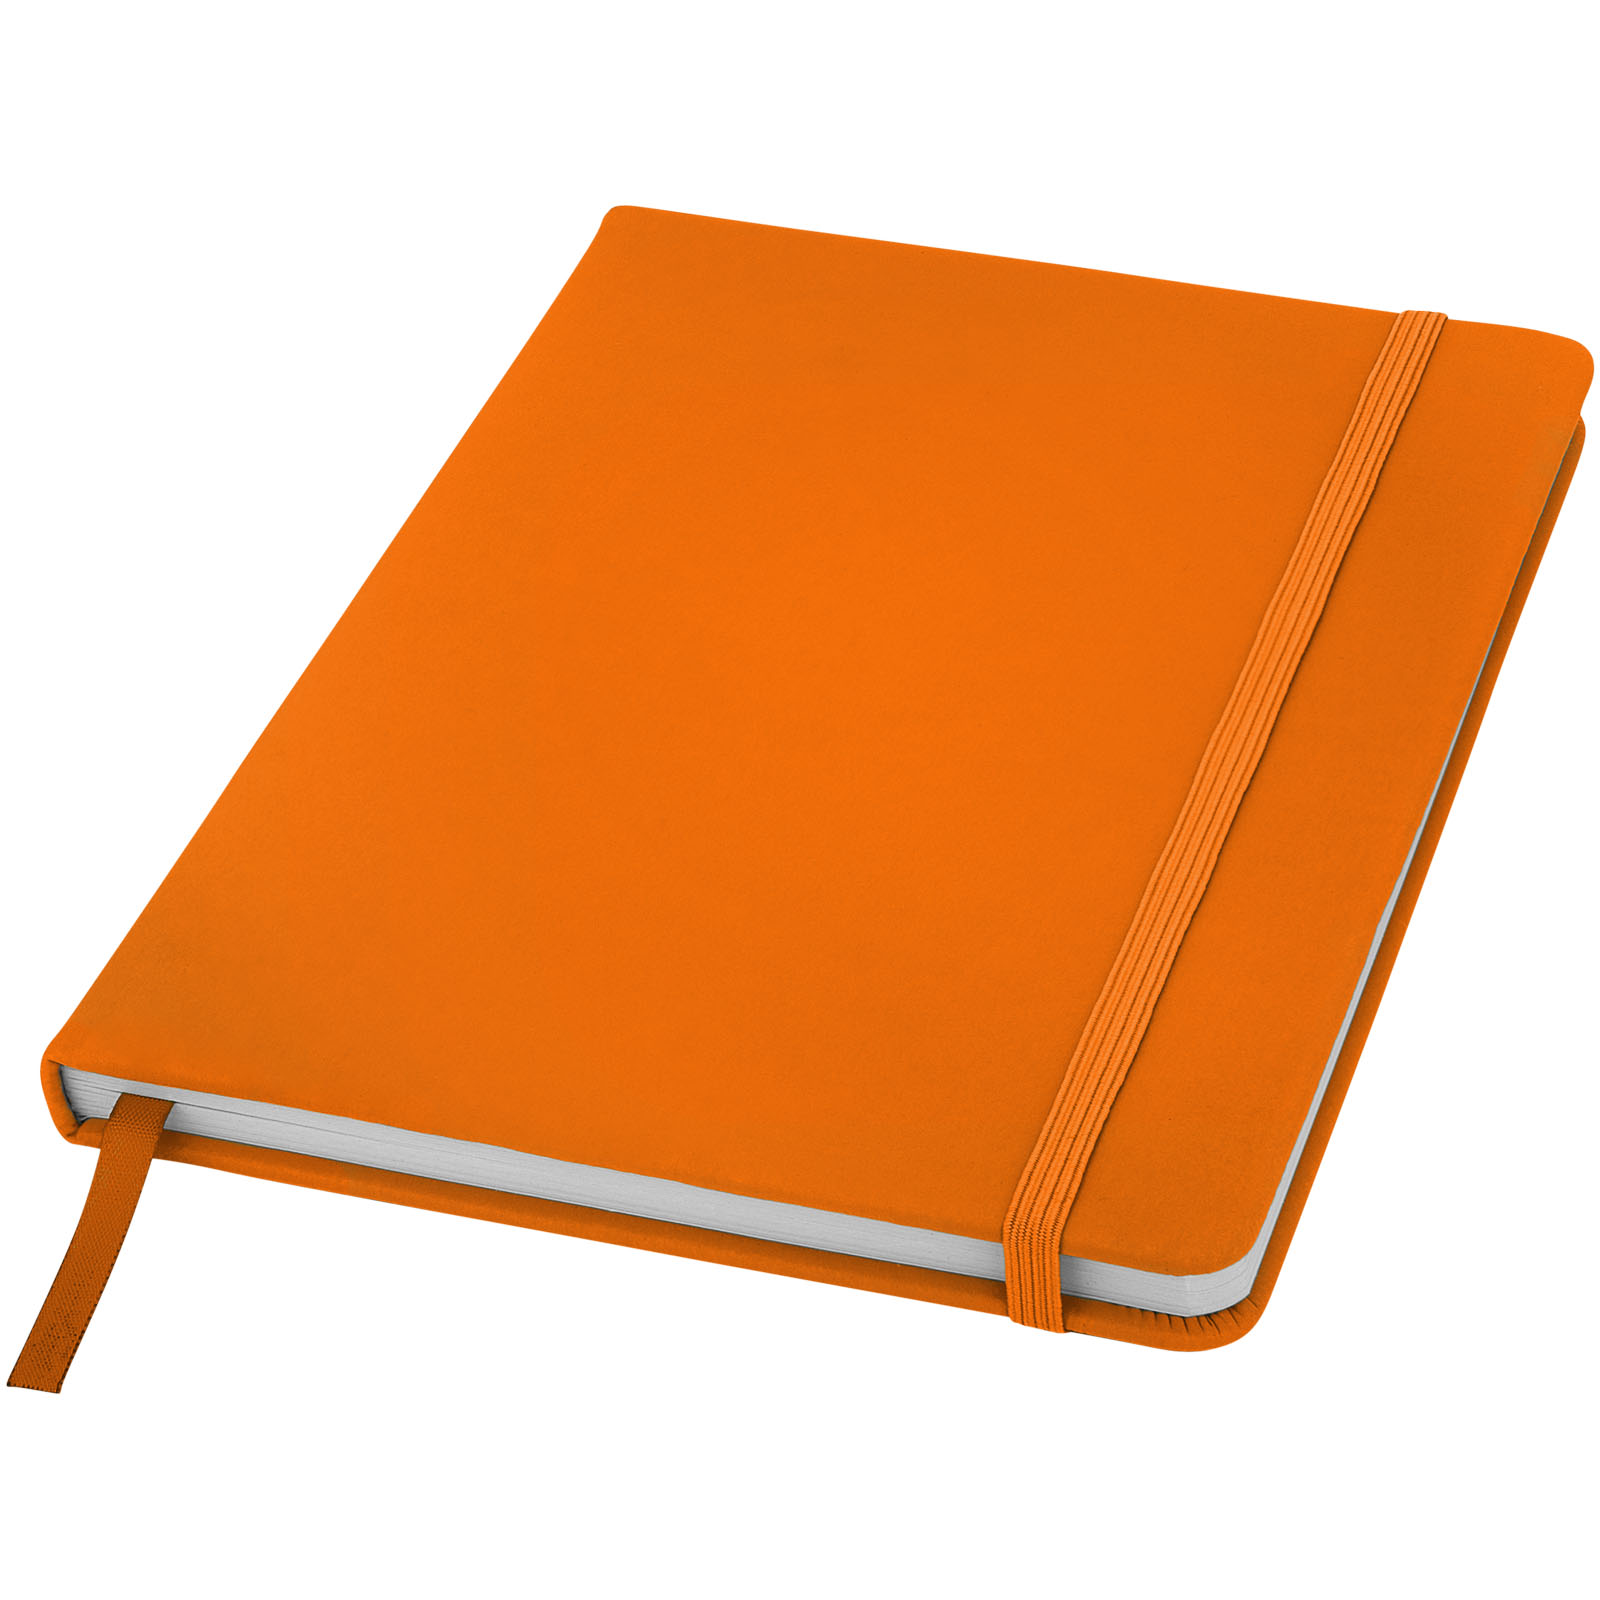 Taccuino con elastico e copertina in poliuretano soft in formato A5 SPECTRUM 106904 - Arancio 